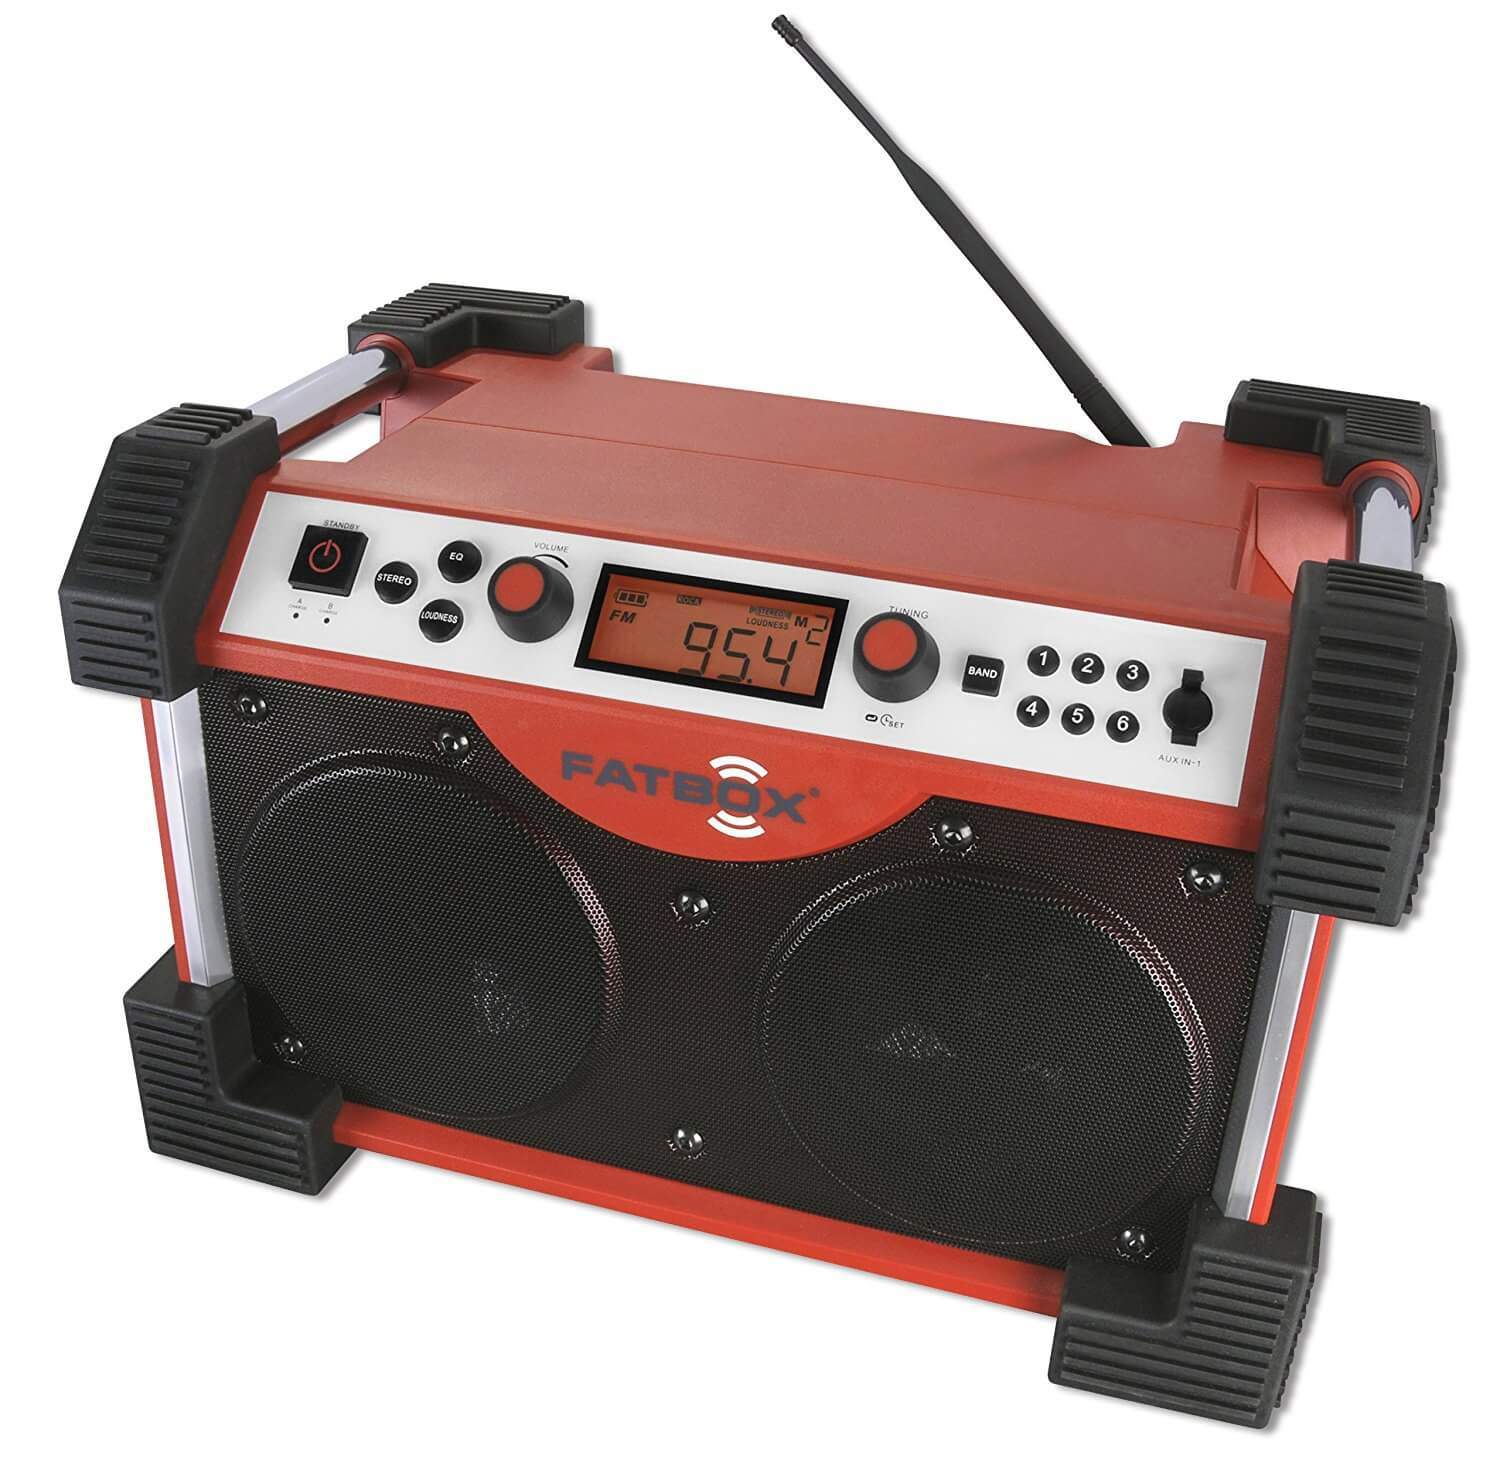 Sangean FB-100 Fatbox Rugged Industrial AM/FM Radio